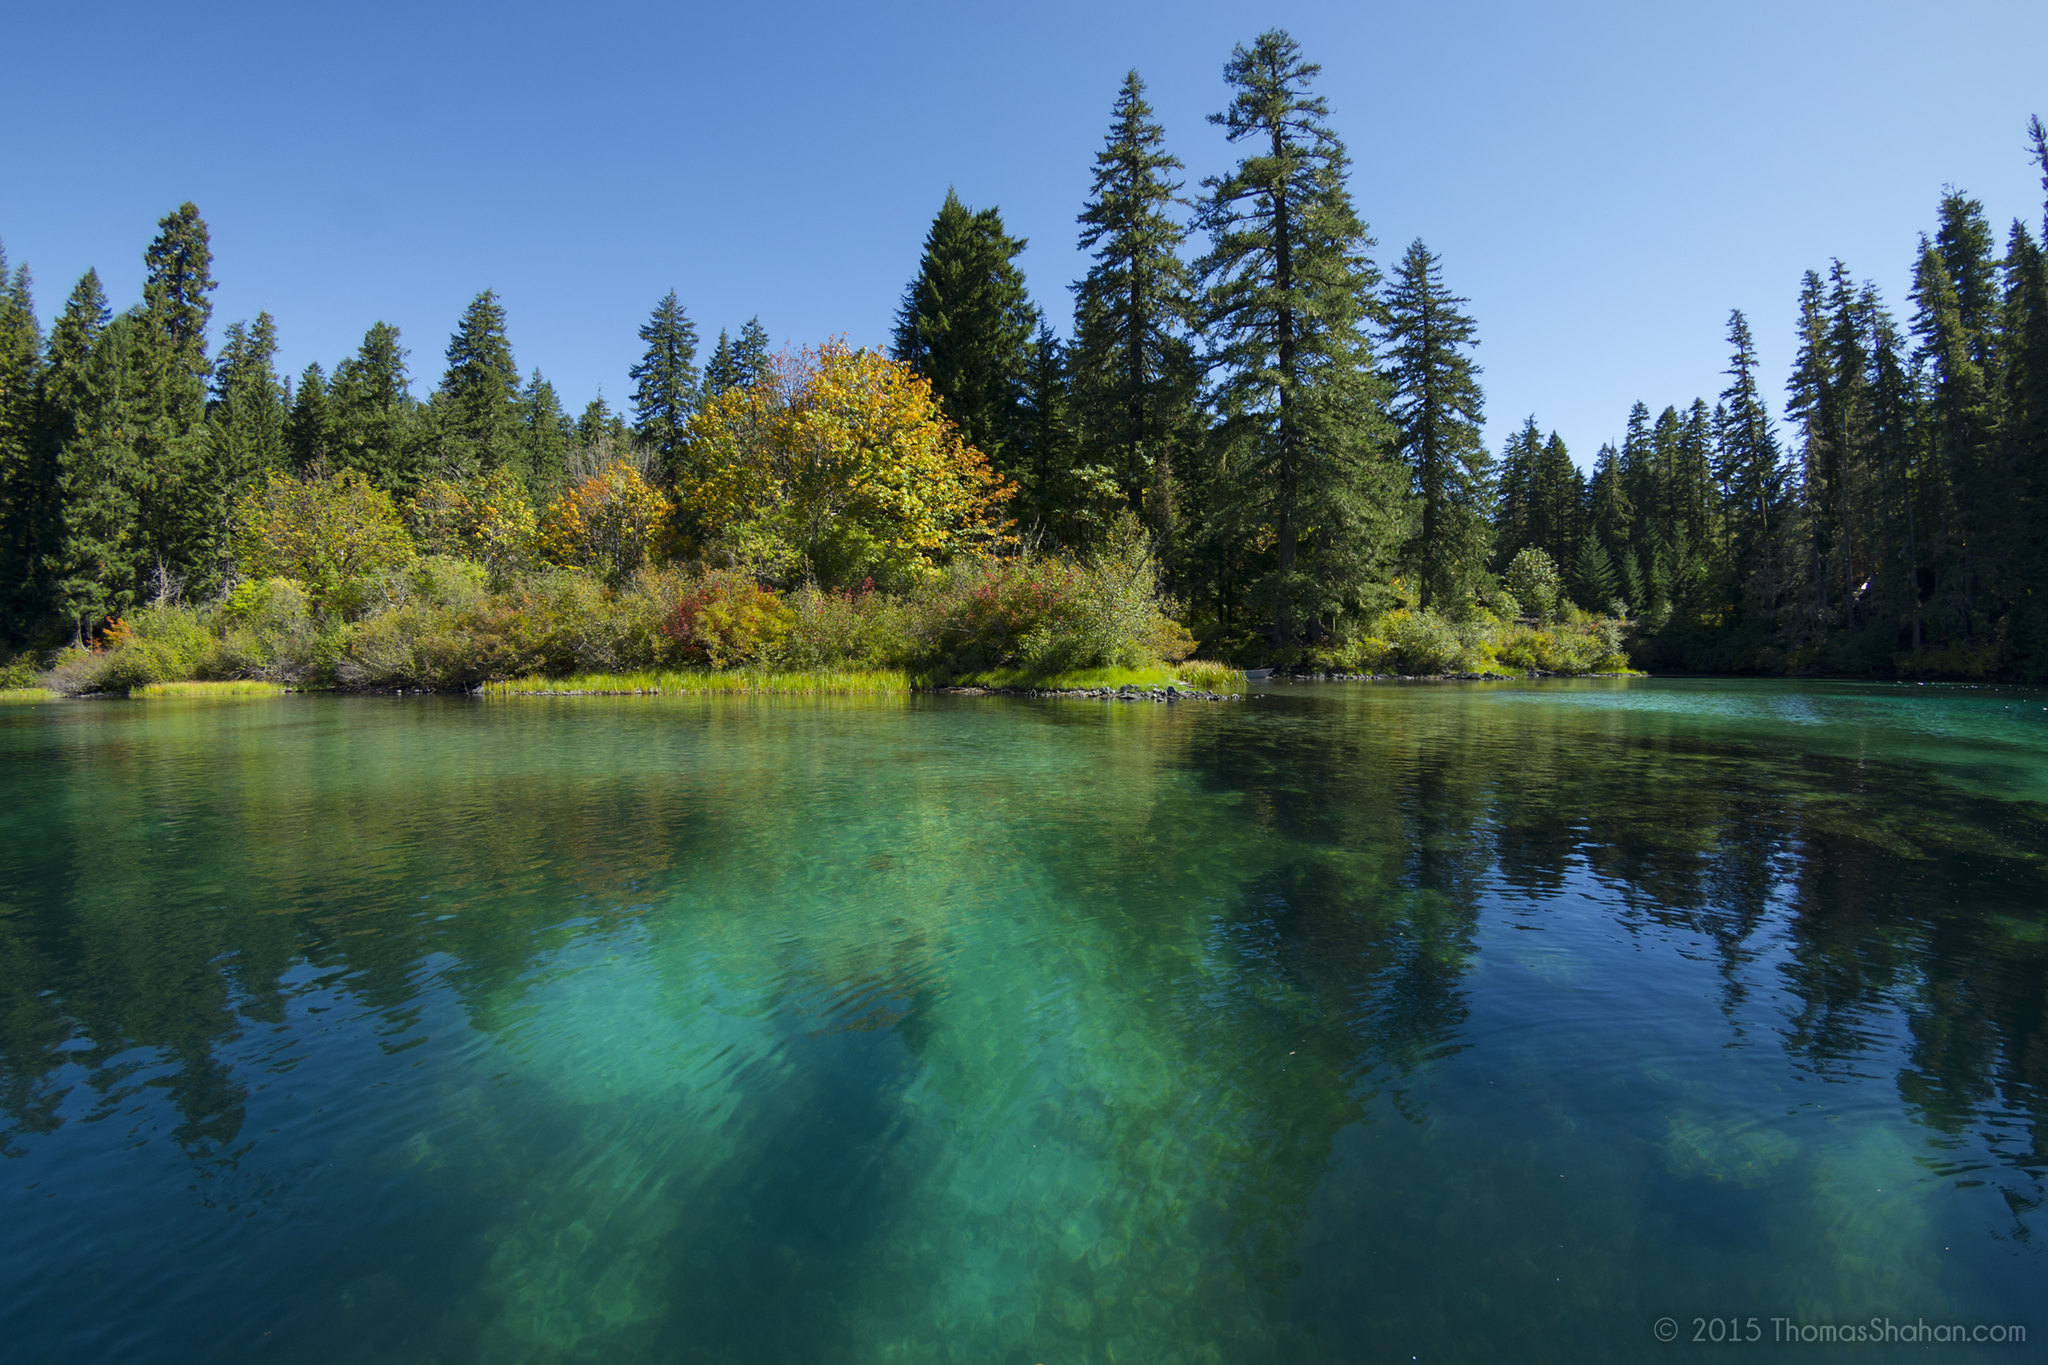 Clearest lake in Oregon